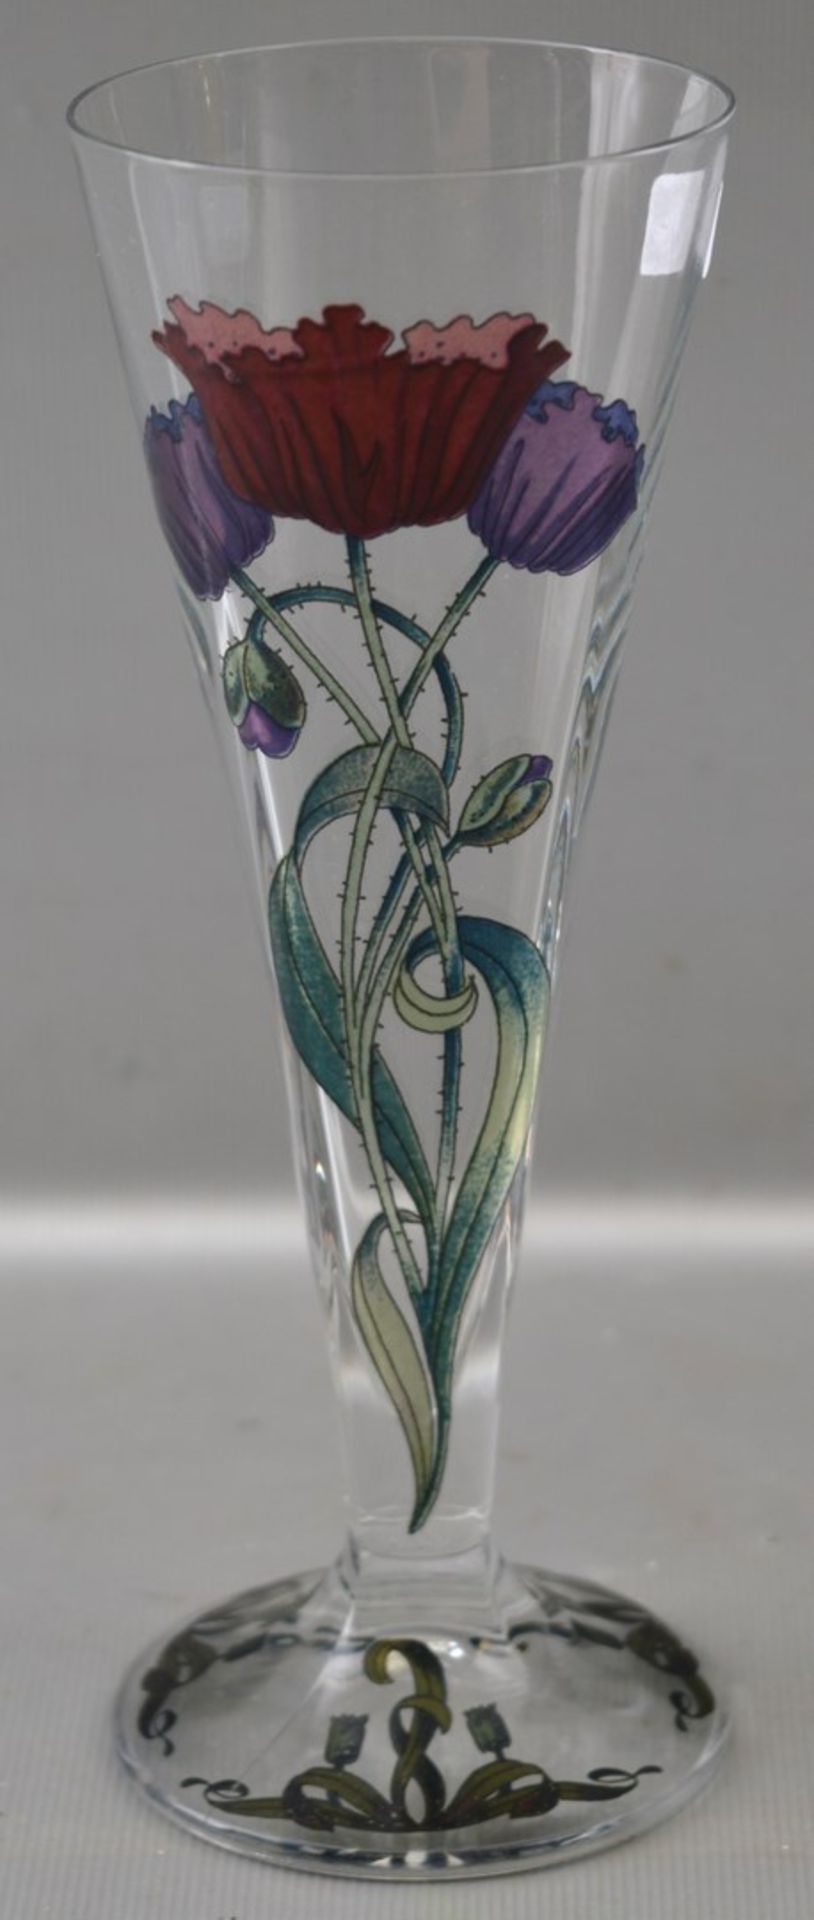 Sektglas farbl. Glas, Fuß und Kelch mit Jugendstil-Blüten und Ornamenten verziert, H 18 cm